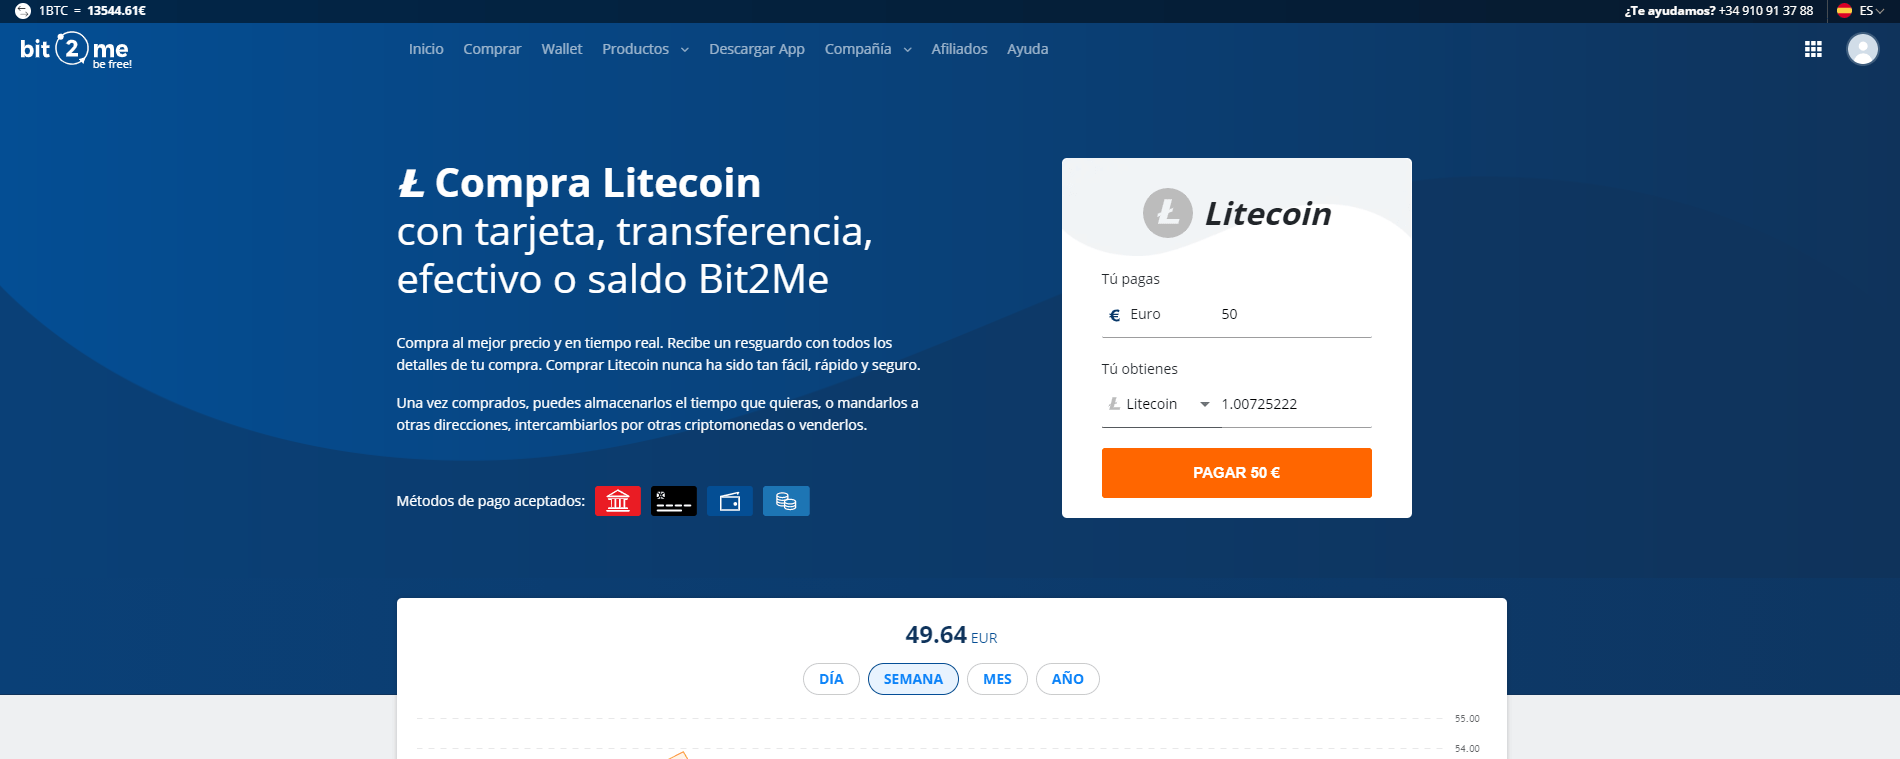 Litecoin comprando en Bit2Me